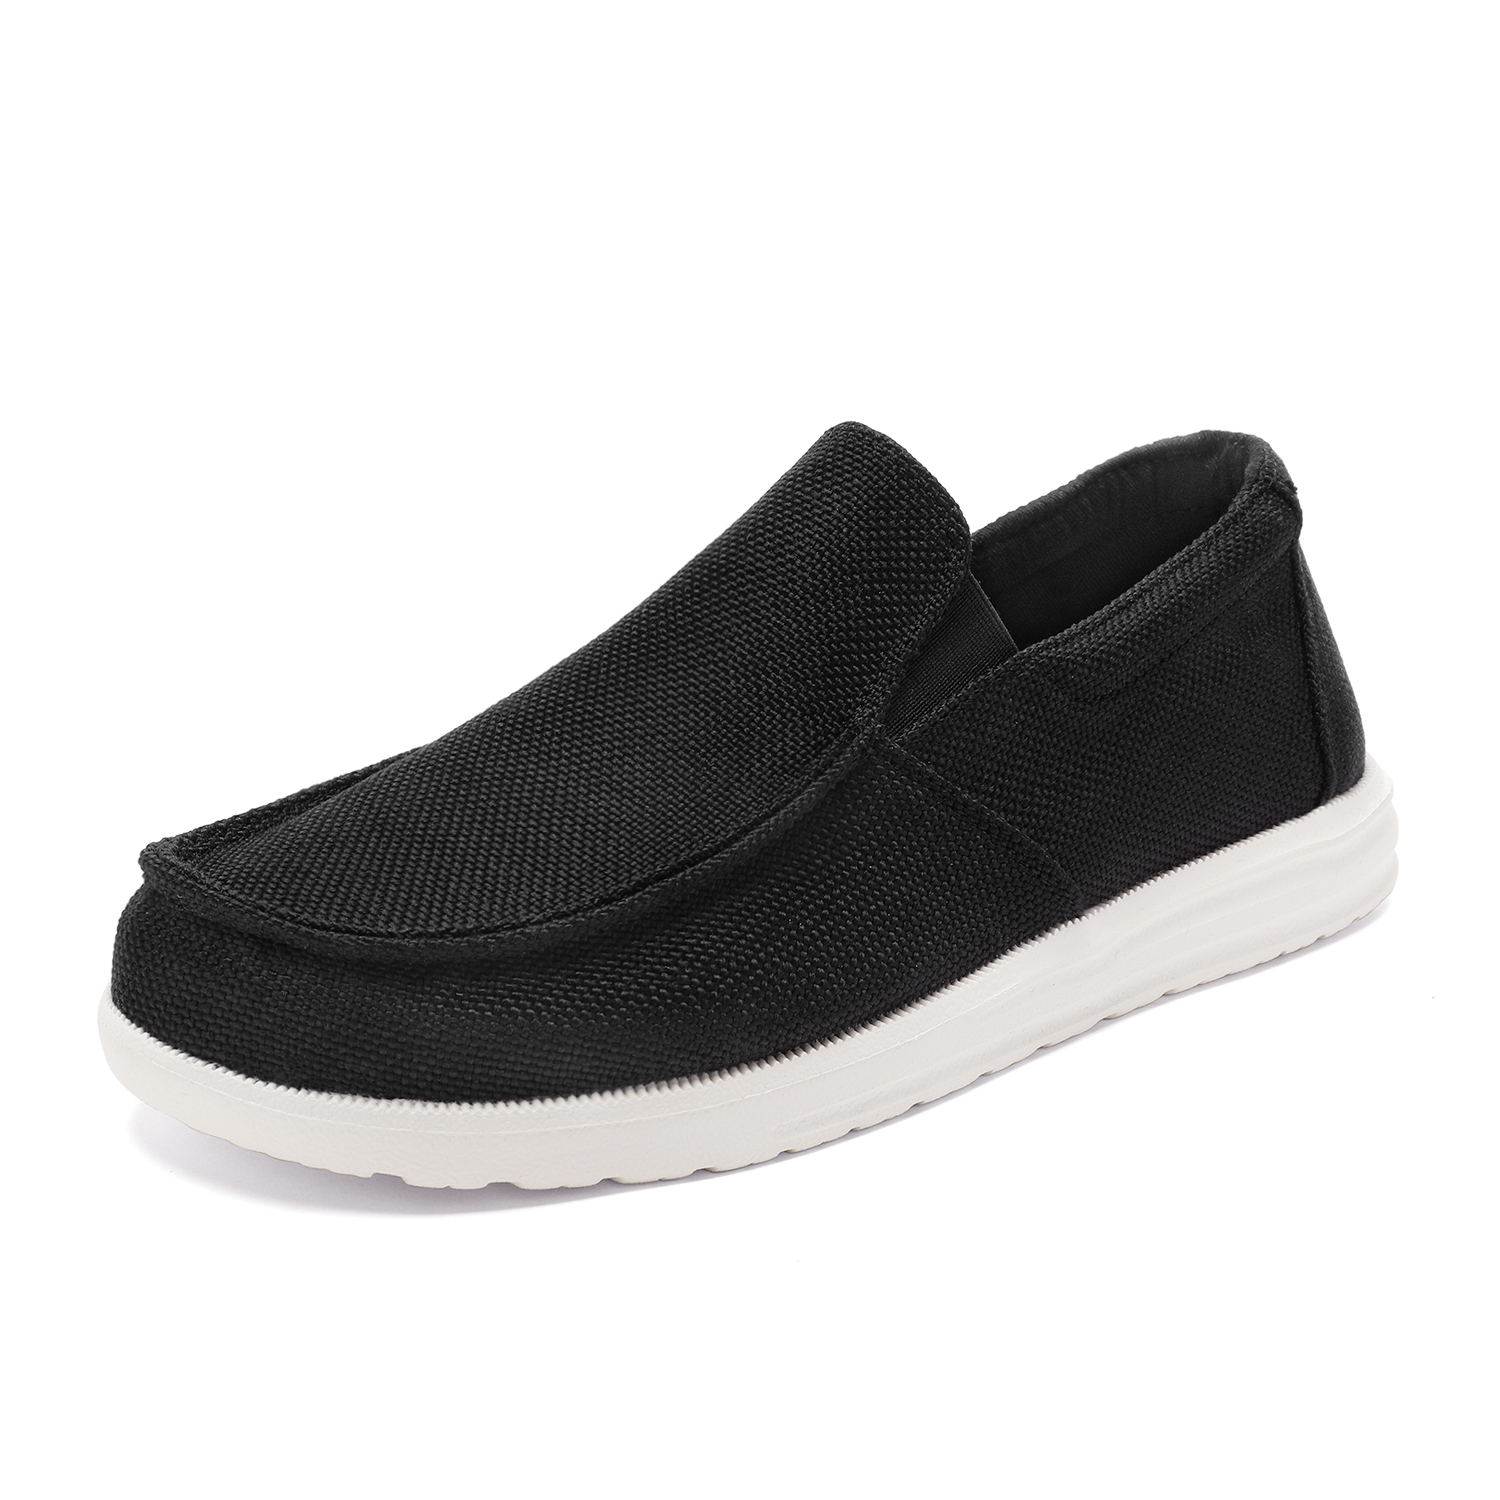 Bruno Marc Men's Slip On Loafer Walking Shoes SUNVENT-01 BLACK size 10 - image 1 of 5